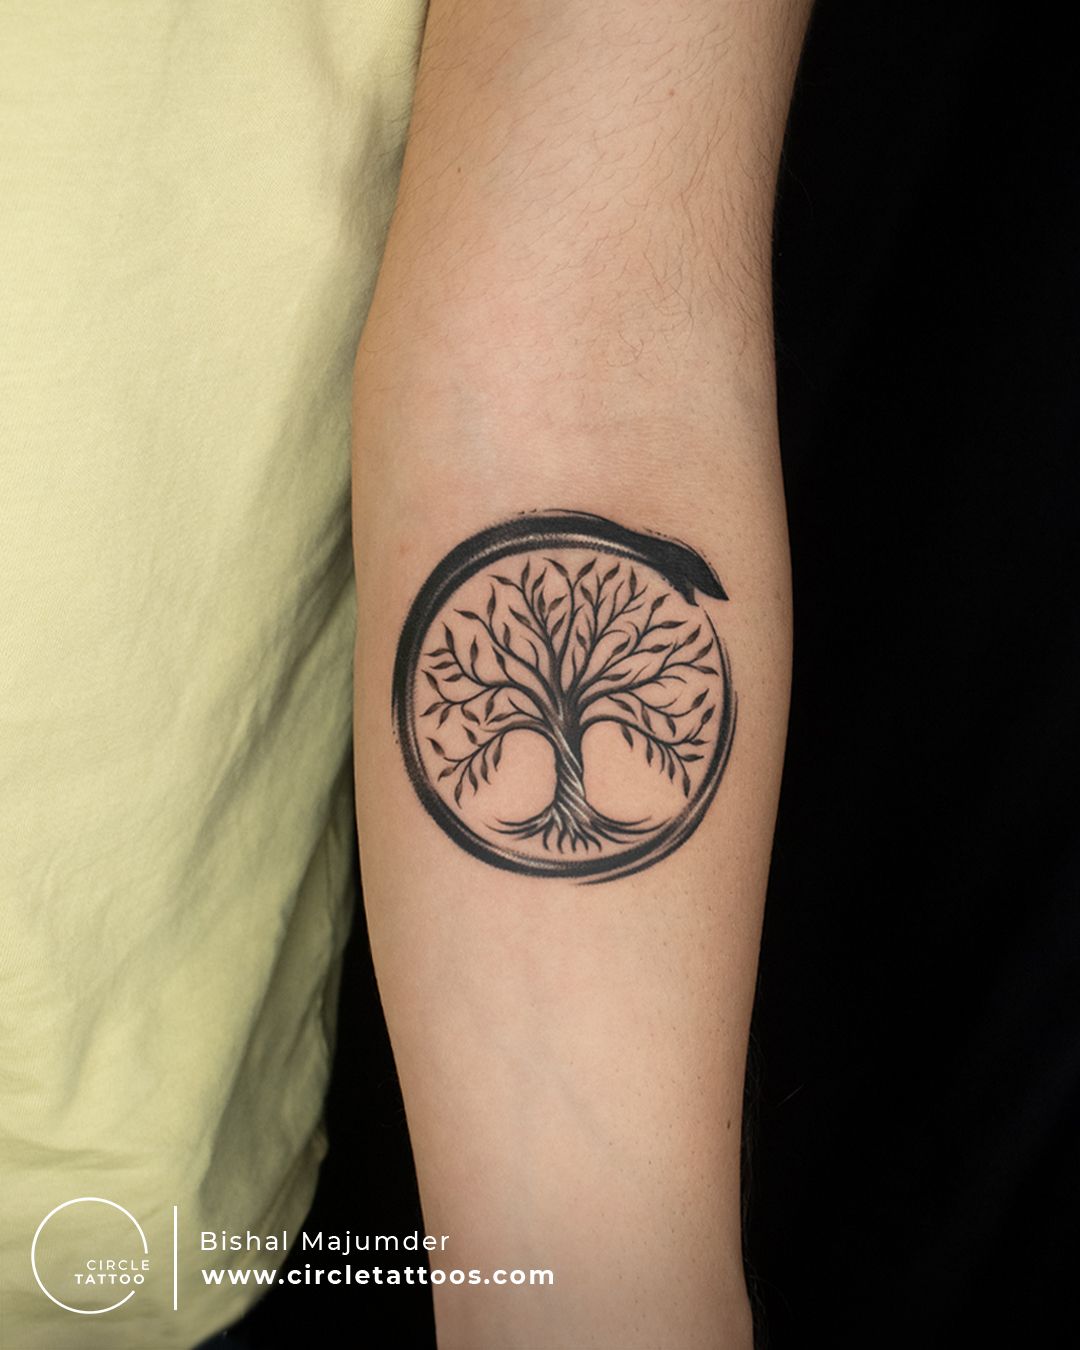 Life tattoos Tree of life tattoo Small wrist tattoos